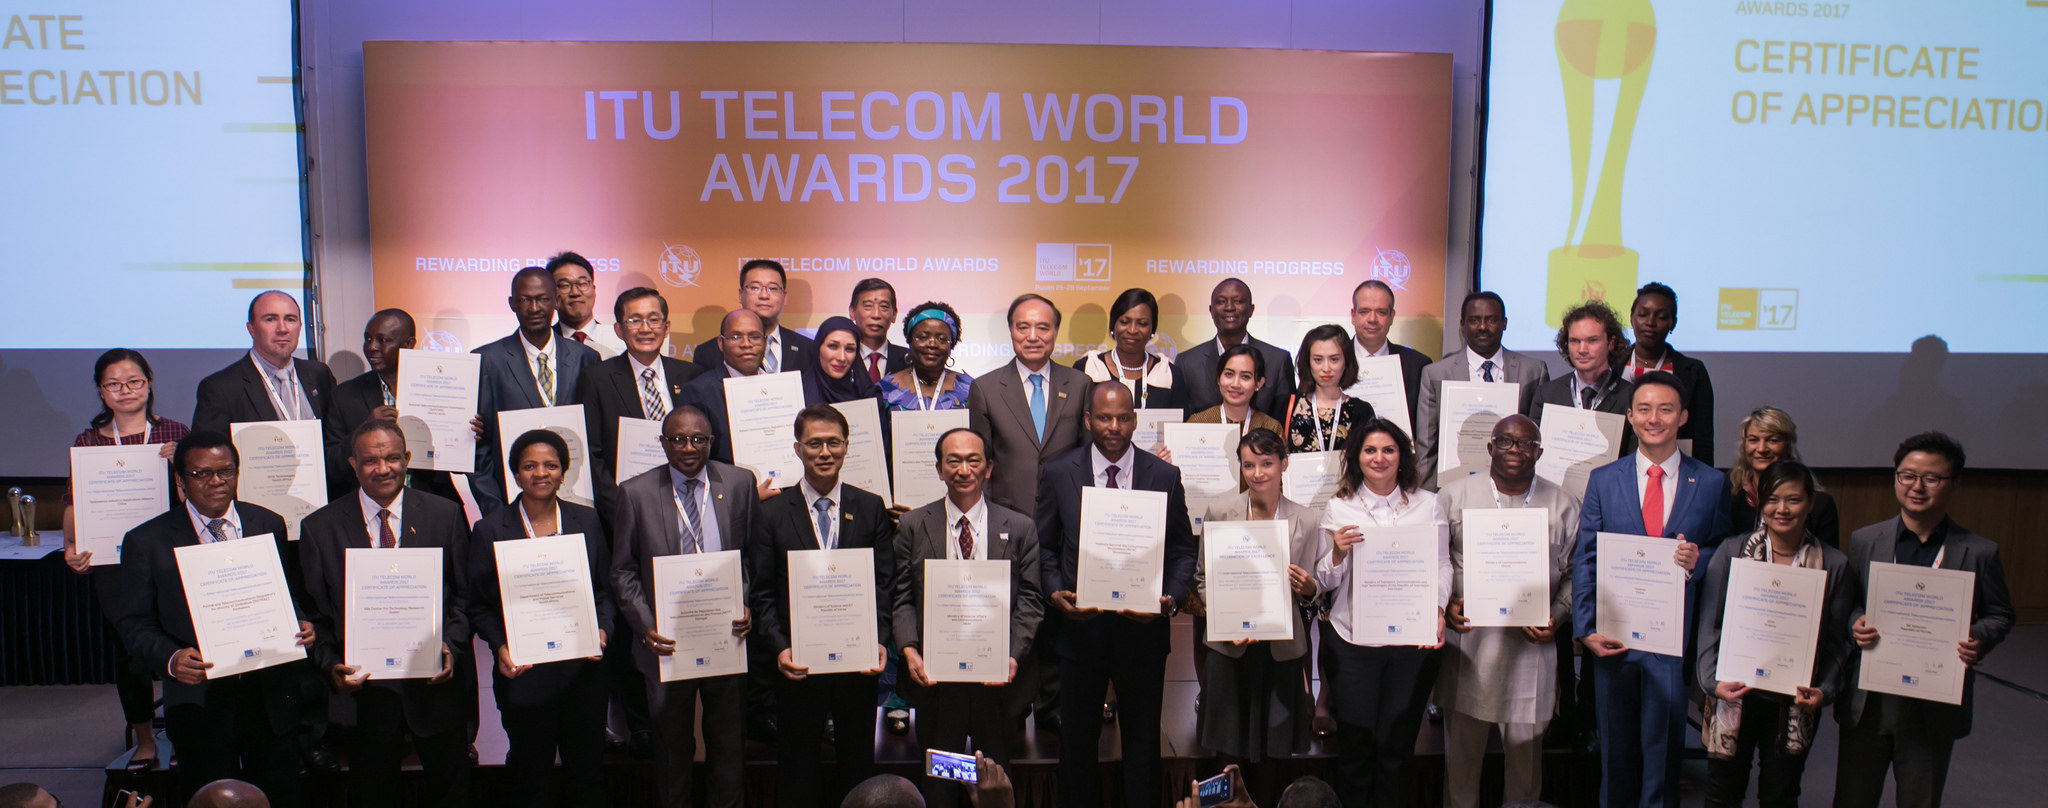 ITU Telecom World Awards Ceremony.jpg